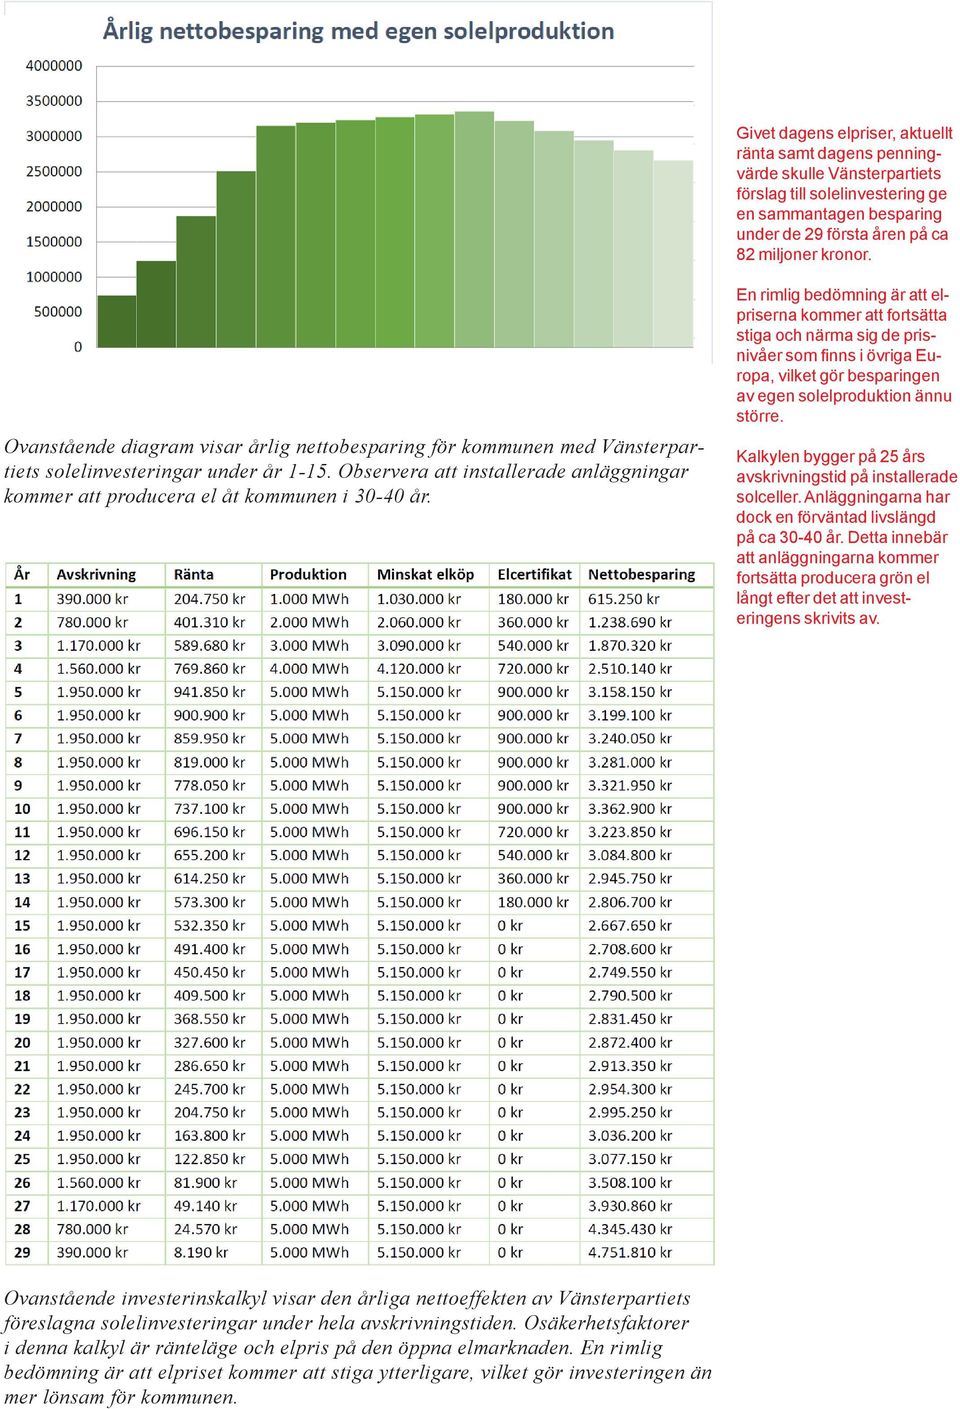 Ovanstående diagram visar årlig nettobesparing för kommunen med Vänsterpartiets solelinvesteringar under år 1-15.